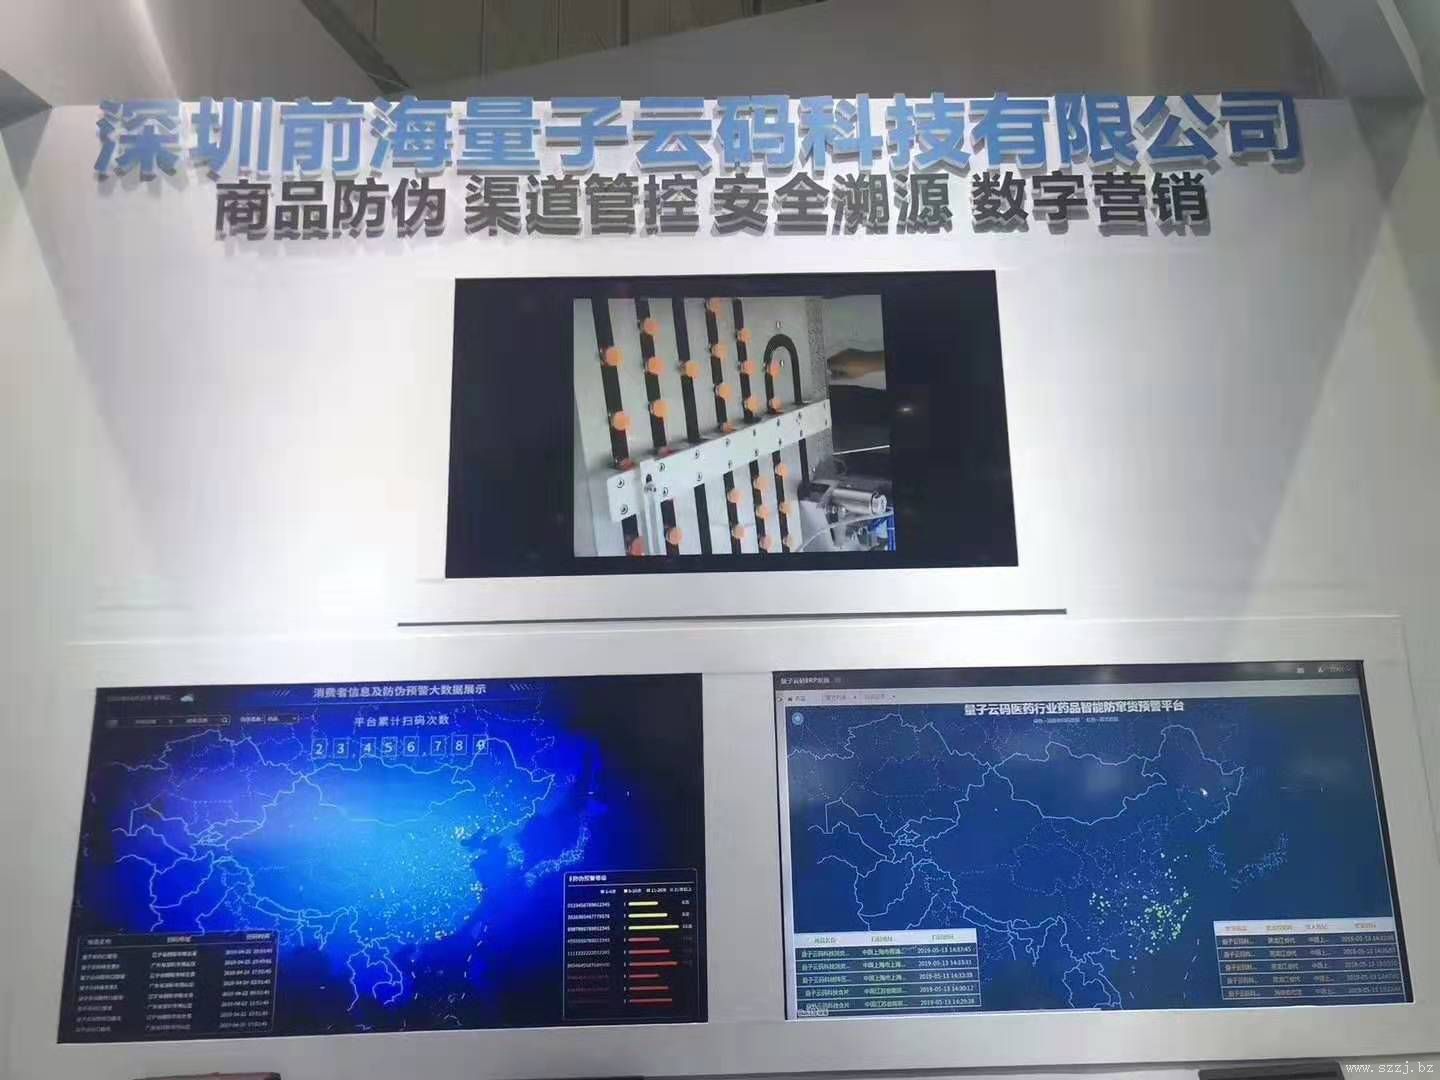 深圳前海量子云码科技有限公司申请成为我中心定点服务单位，公司总经理蒋涛先生聘为中心常务理事。